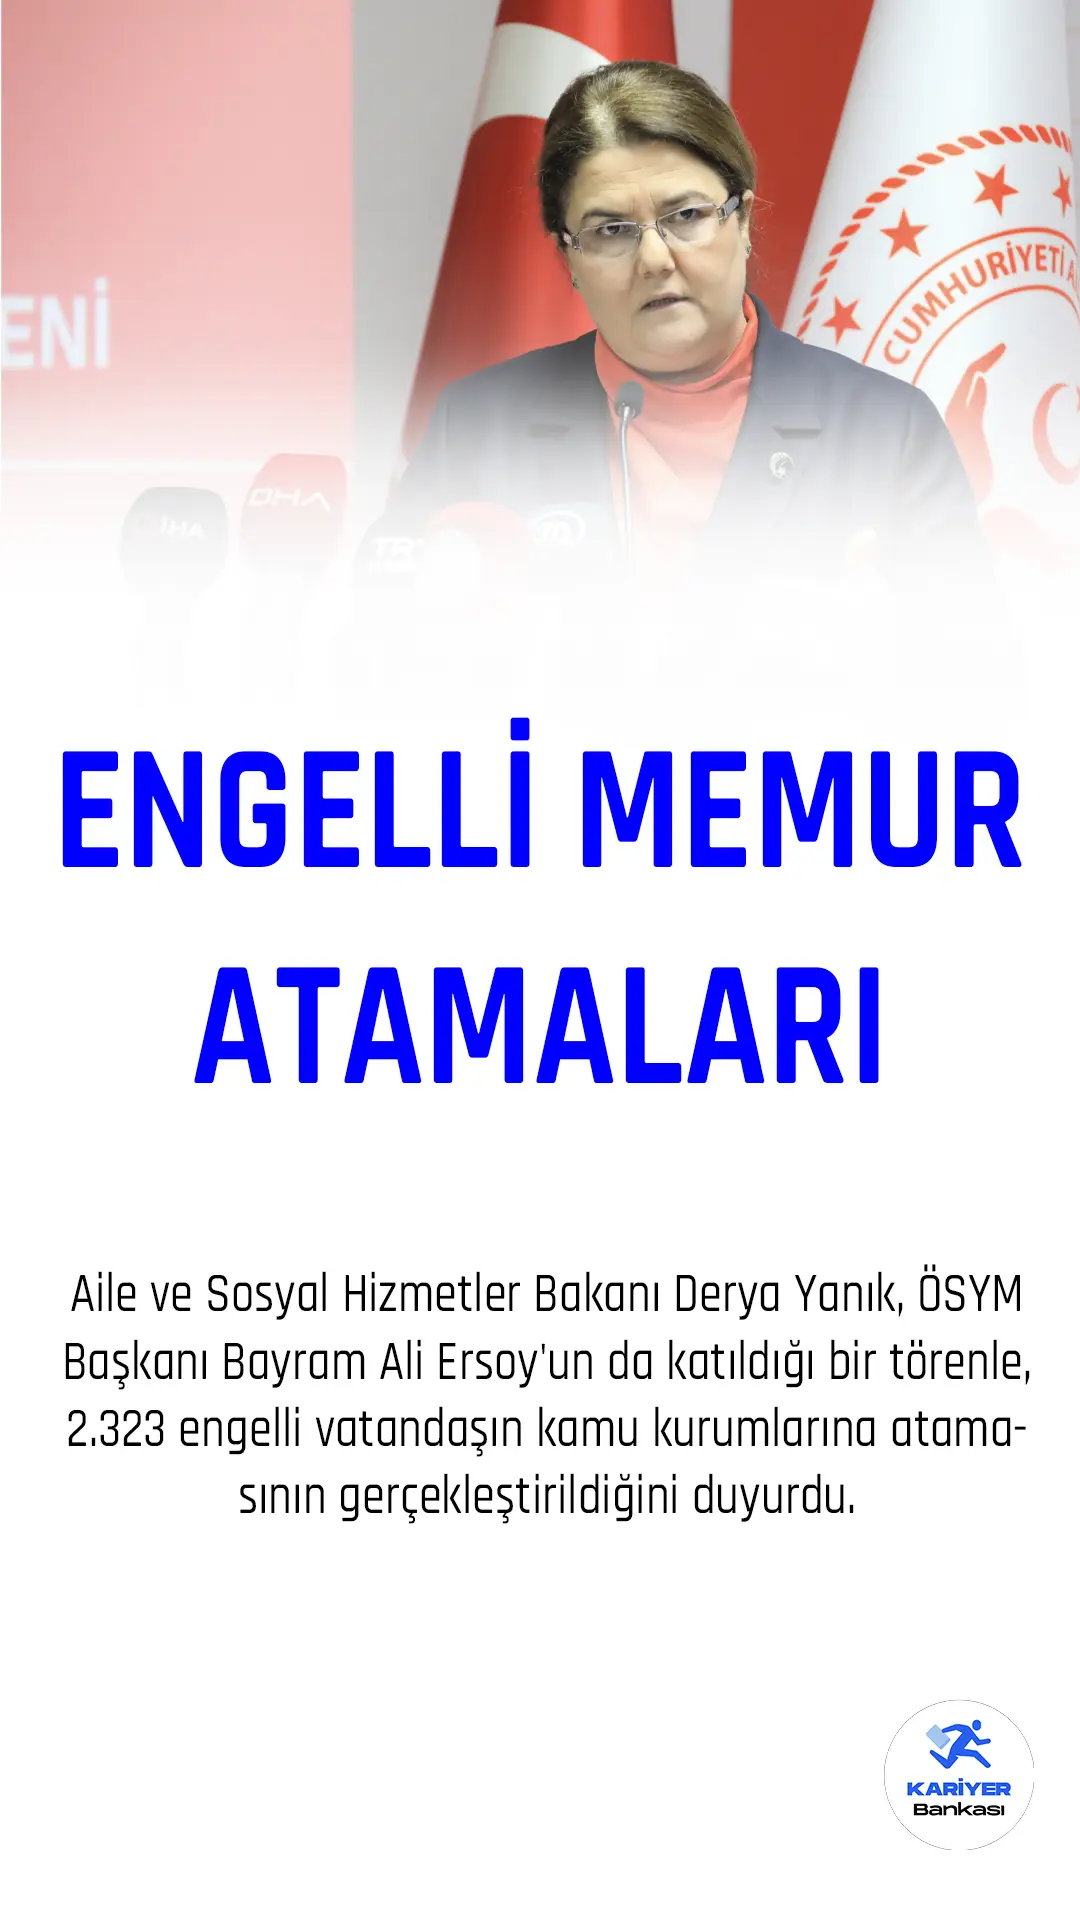 Aile ve Sosyal Hizmetler Bakanı Derya Yanık, ÖSYM Başkanı Bayram Ali Ersoy'un da katıldığı bir törenle, 2.323 engelli vatandaşın kamu kurumlarına atamasının gerçekleştirildiğini duyurdu.